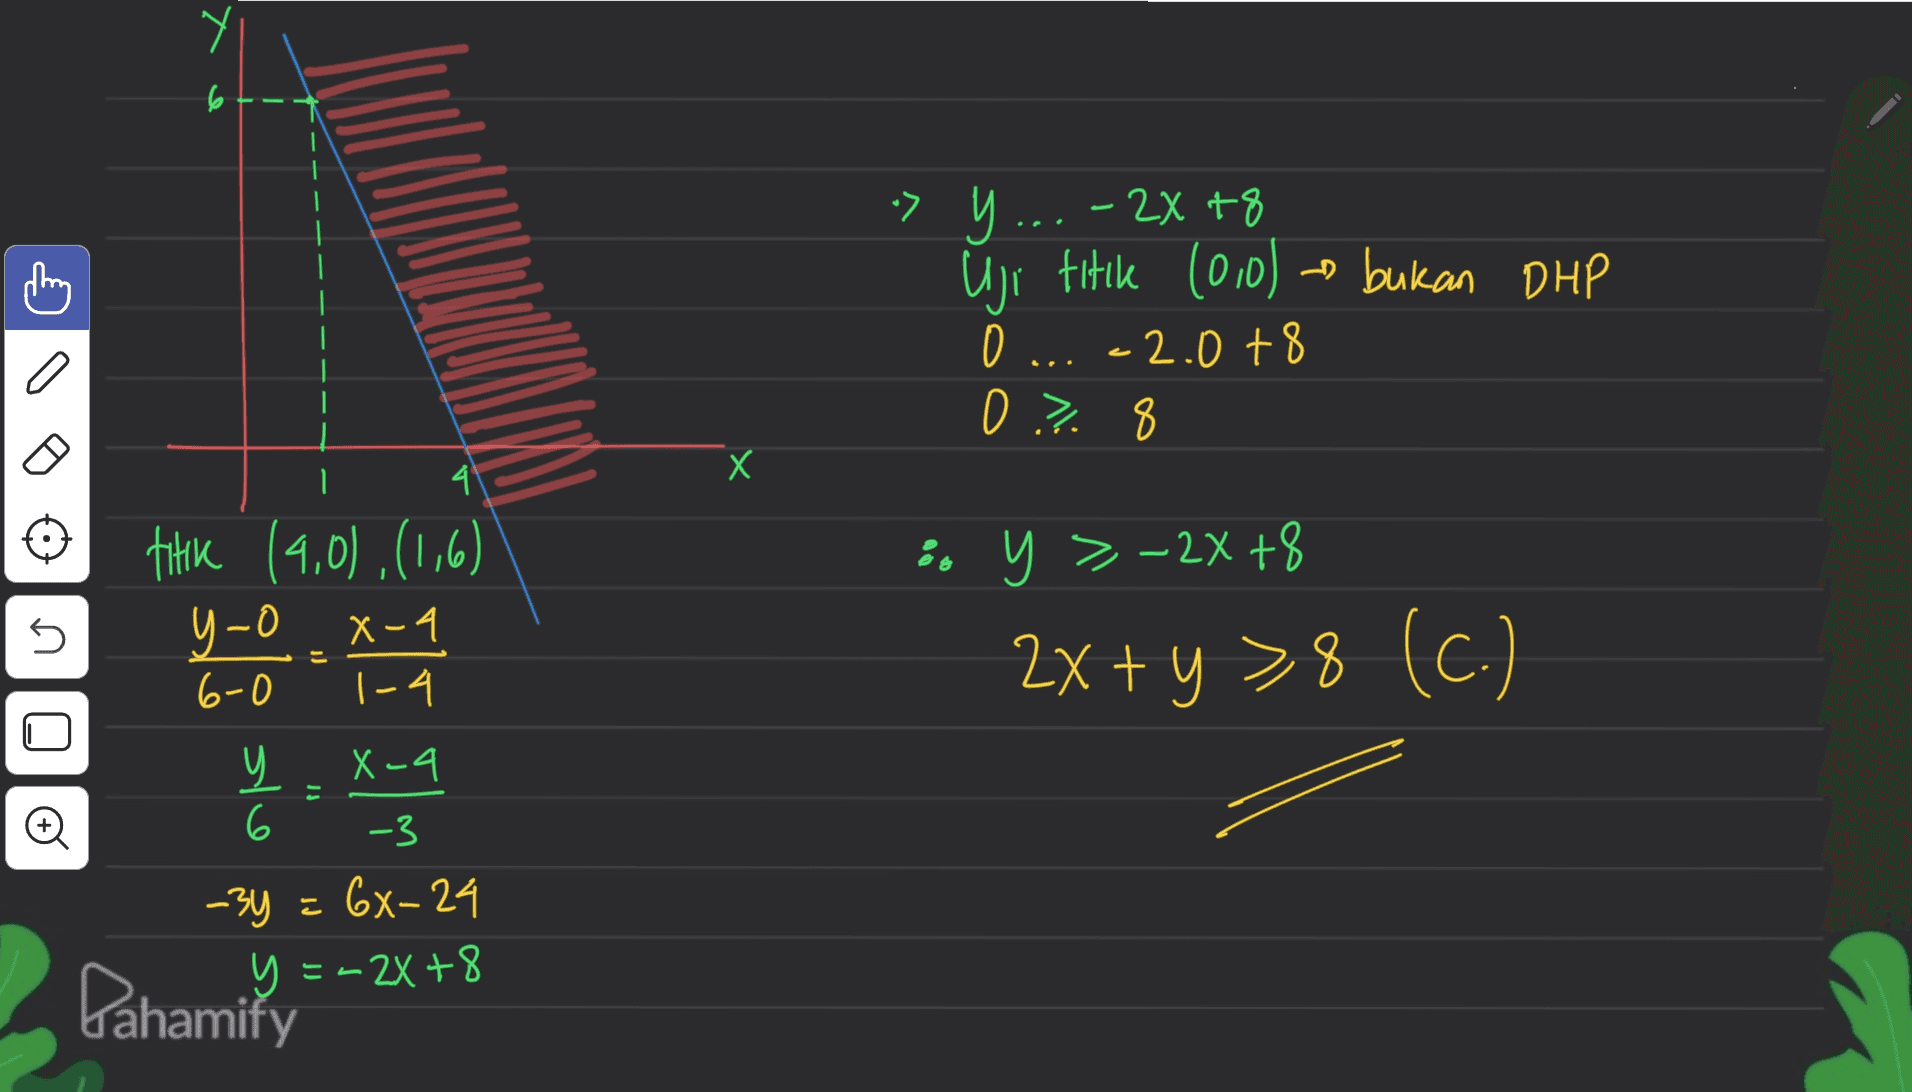 6+-- 7 у. -2x +8 Uji titile (0,0) - bukan DHP 0 c2.0 + 8 a 0 ? 8 0 Х I 4 thik (4,0),(1,6) Y- OX-4 -4 6-0 1-4 yo so y > -2x +8 2x + y >8 (C.) X-4 는 slo 셸 -3 -3y = 6x-24 y = -2X +8 Pahamify 